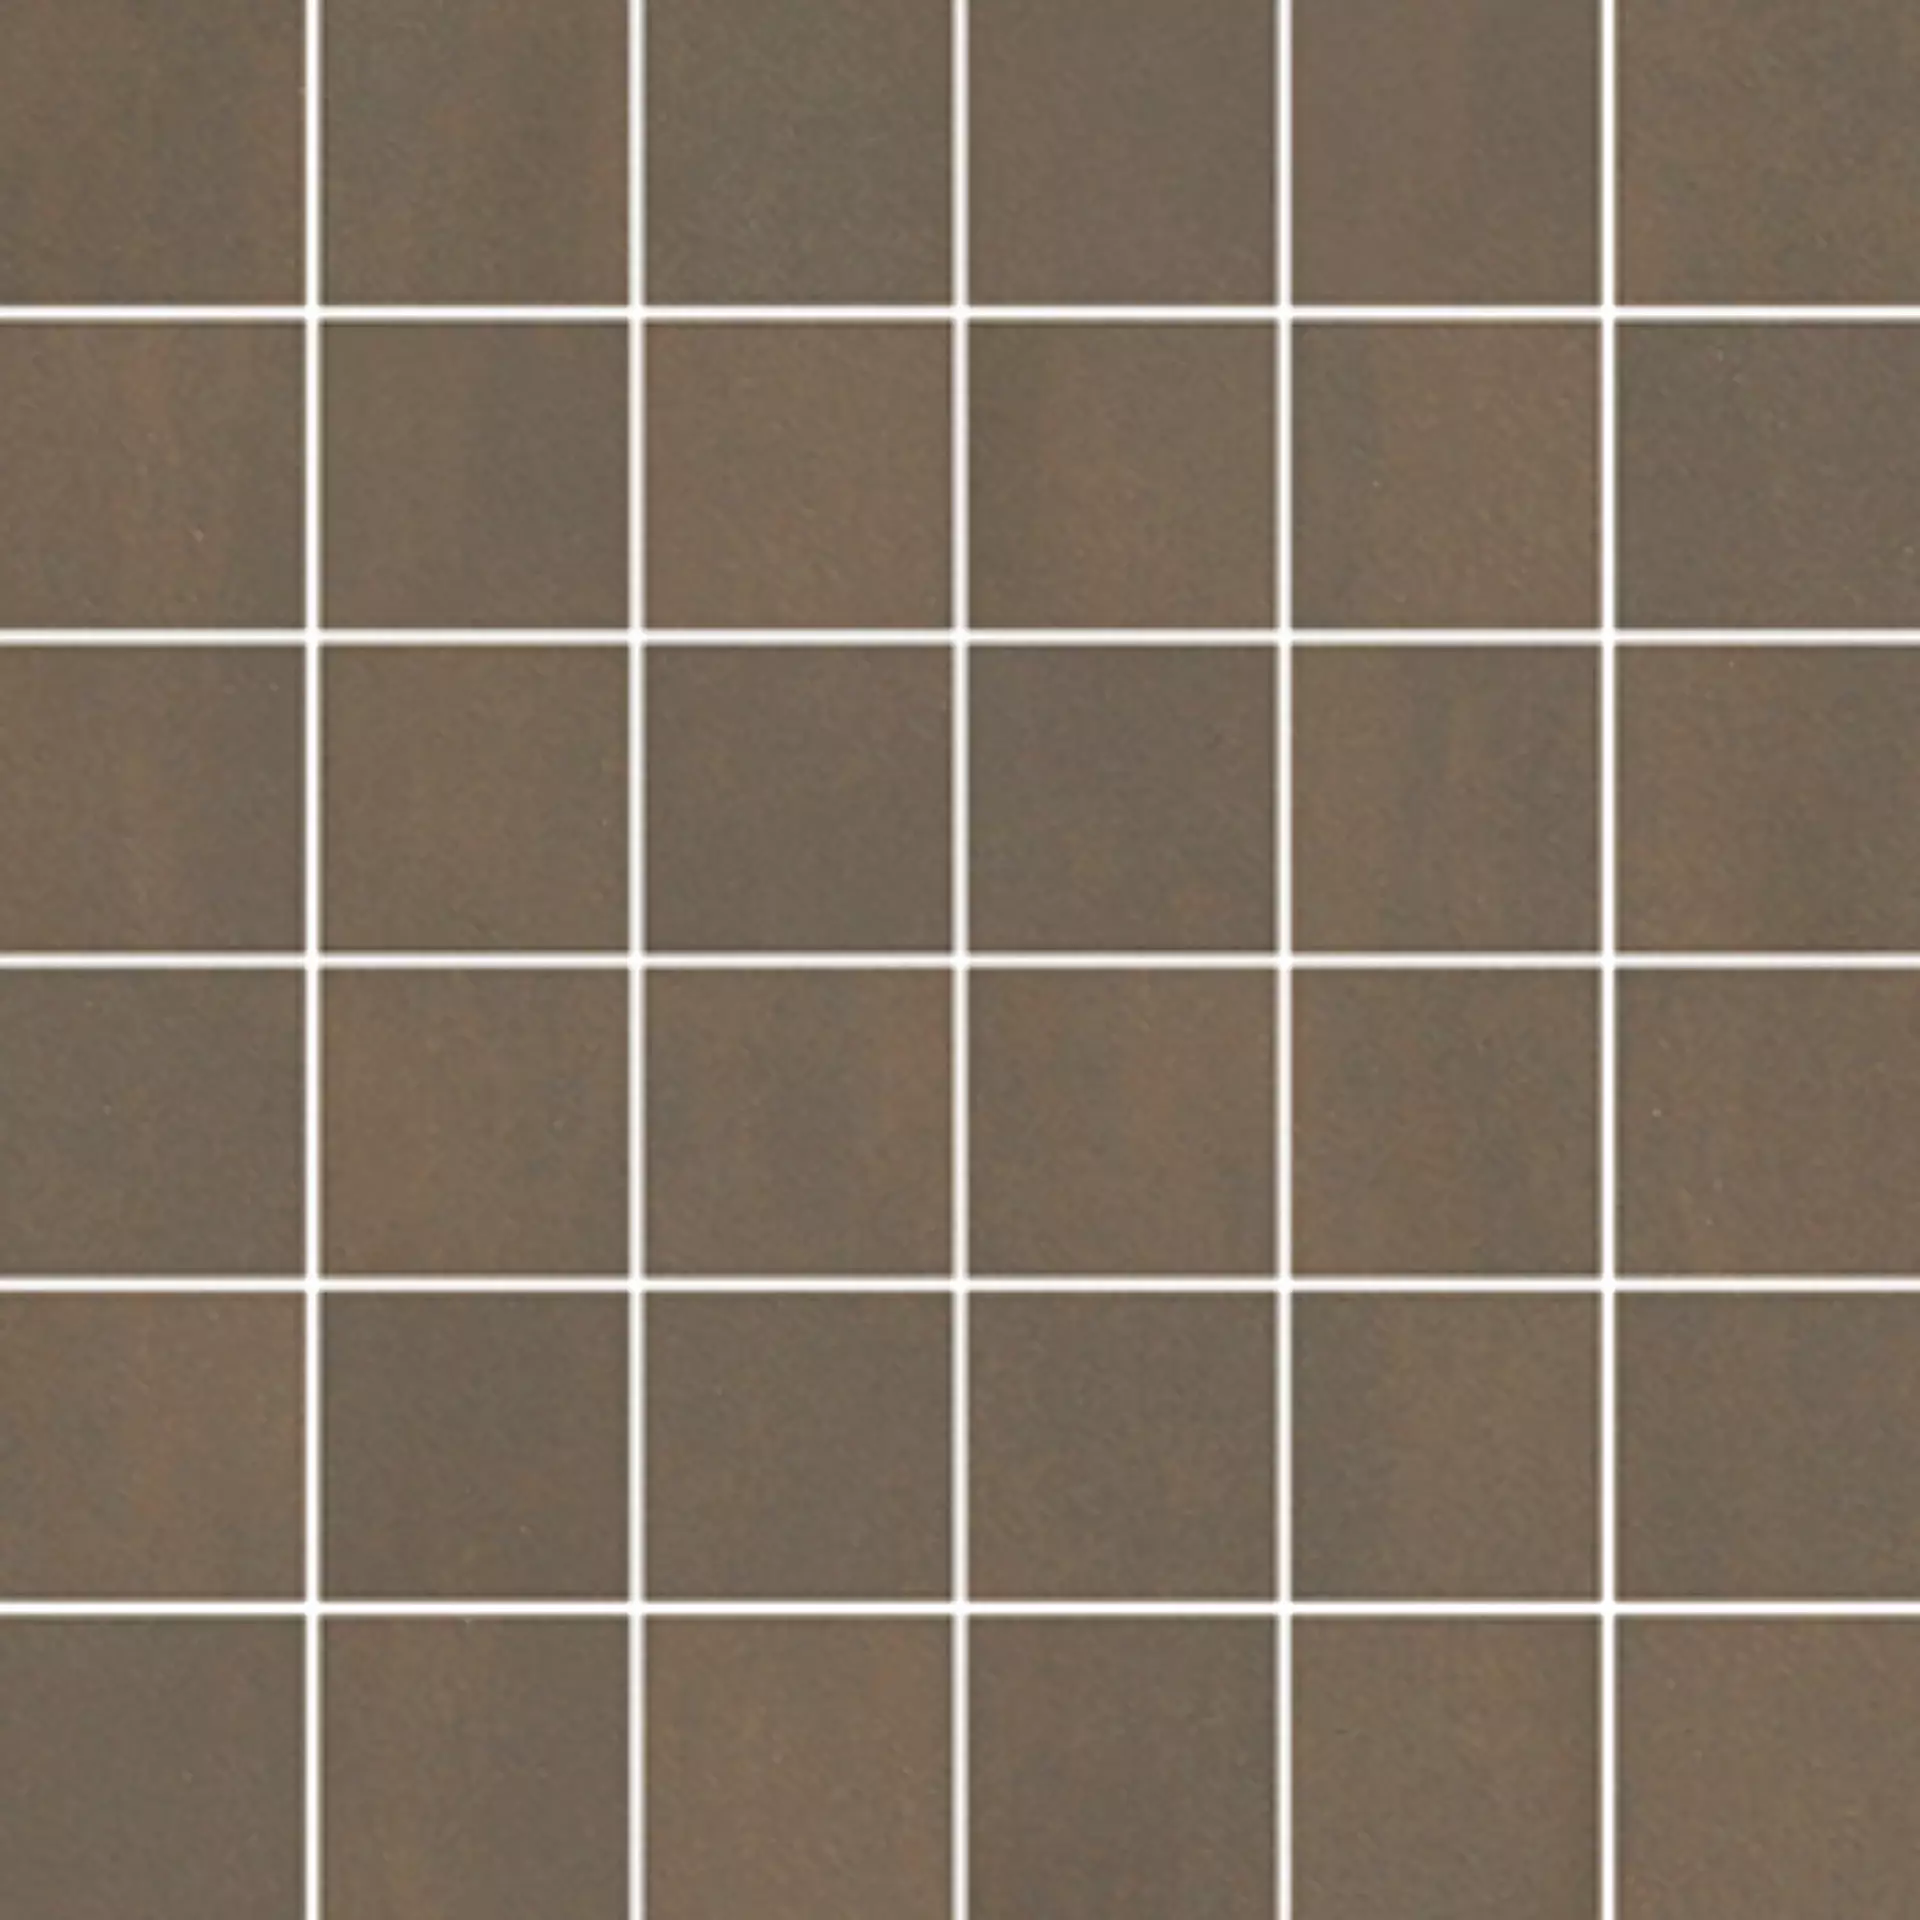 Wandfliese,Bodenfliese Villeroy & Boch Unit Four Dark Brown Matt Dark Brown 2706-CT80 matt 5x5cm Mosaik (5x5) 6mm